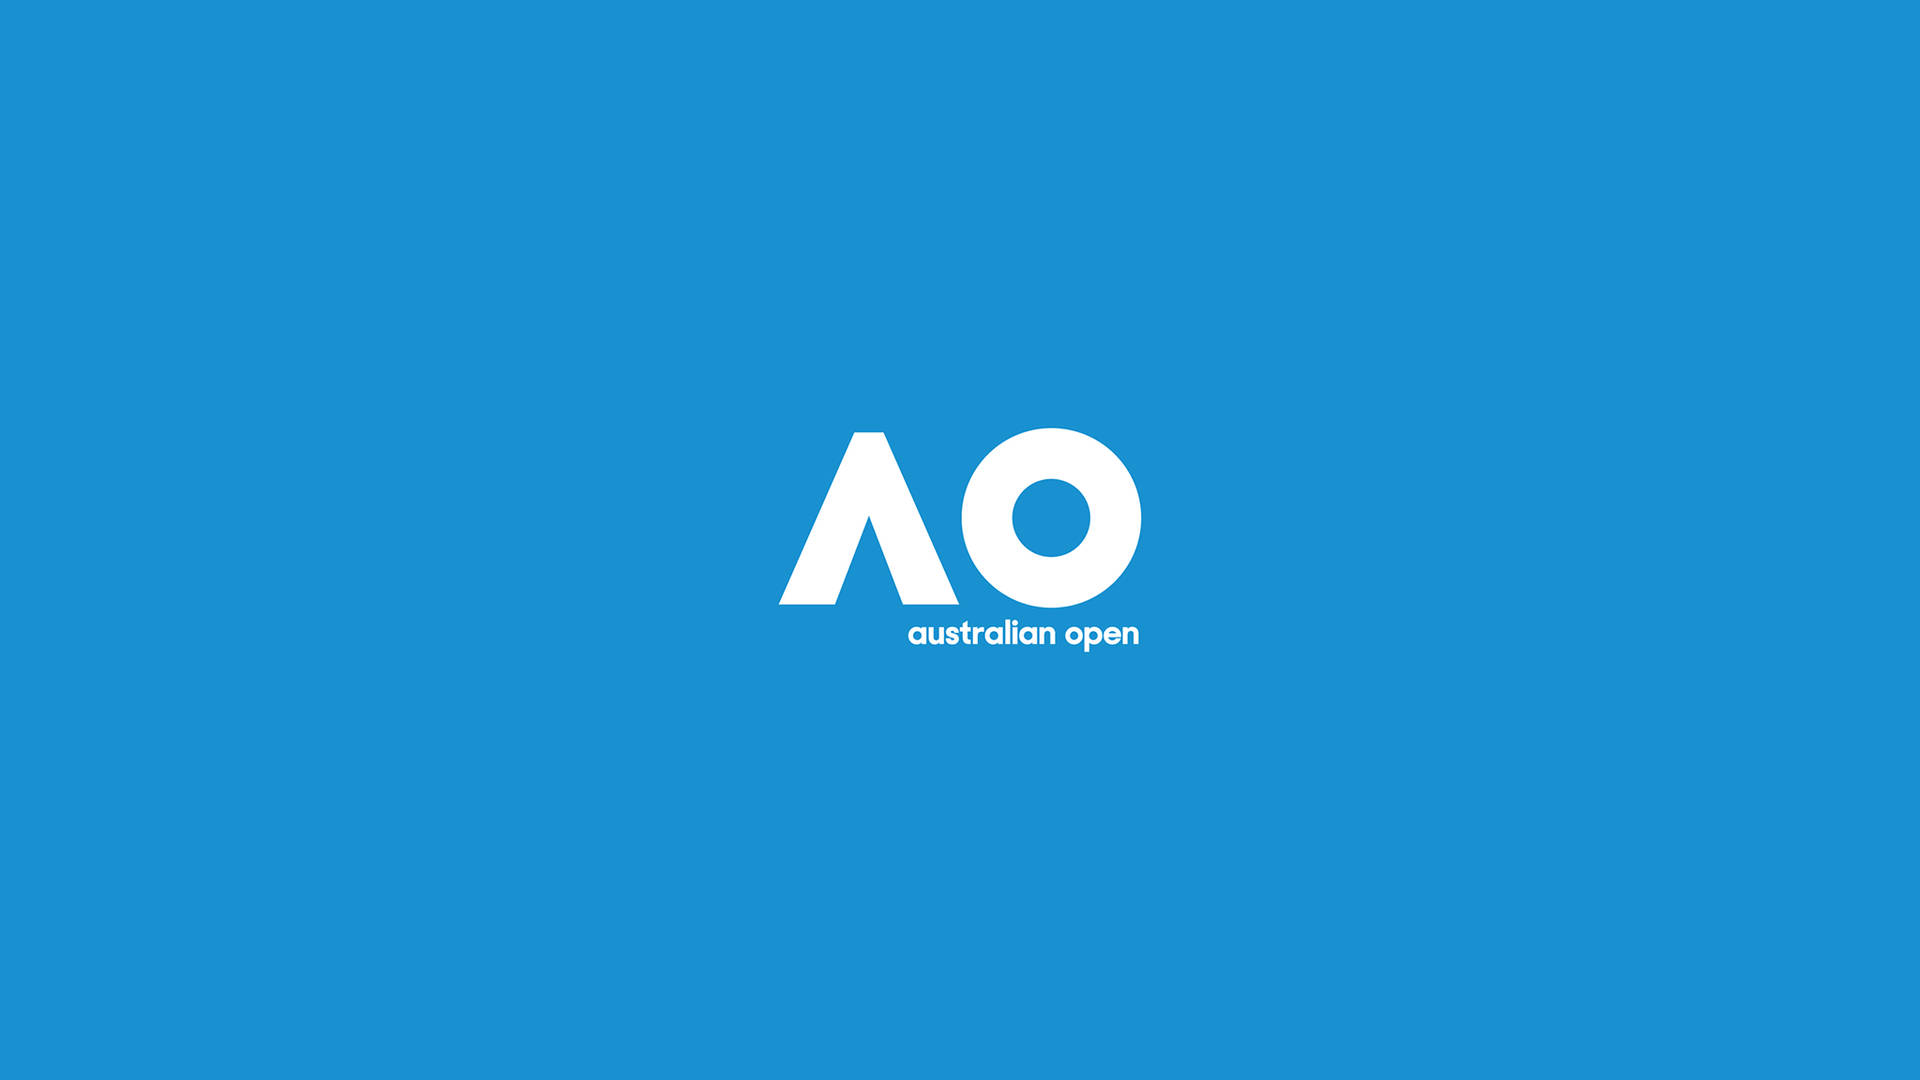 Australian Open Minimalist In Blue Background